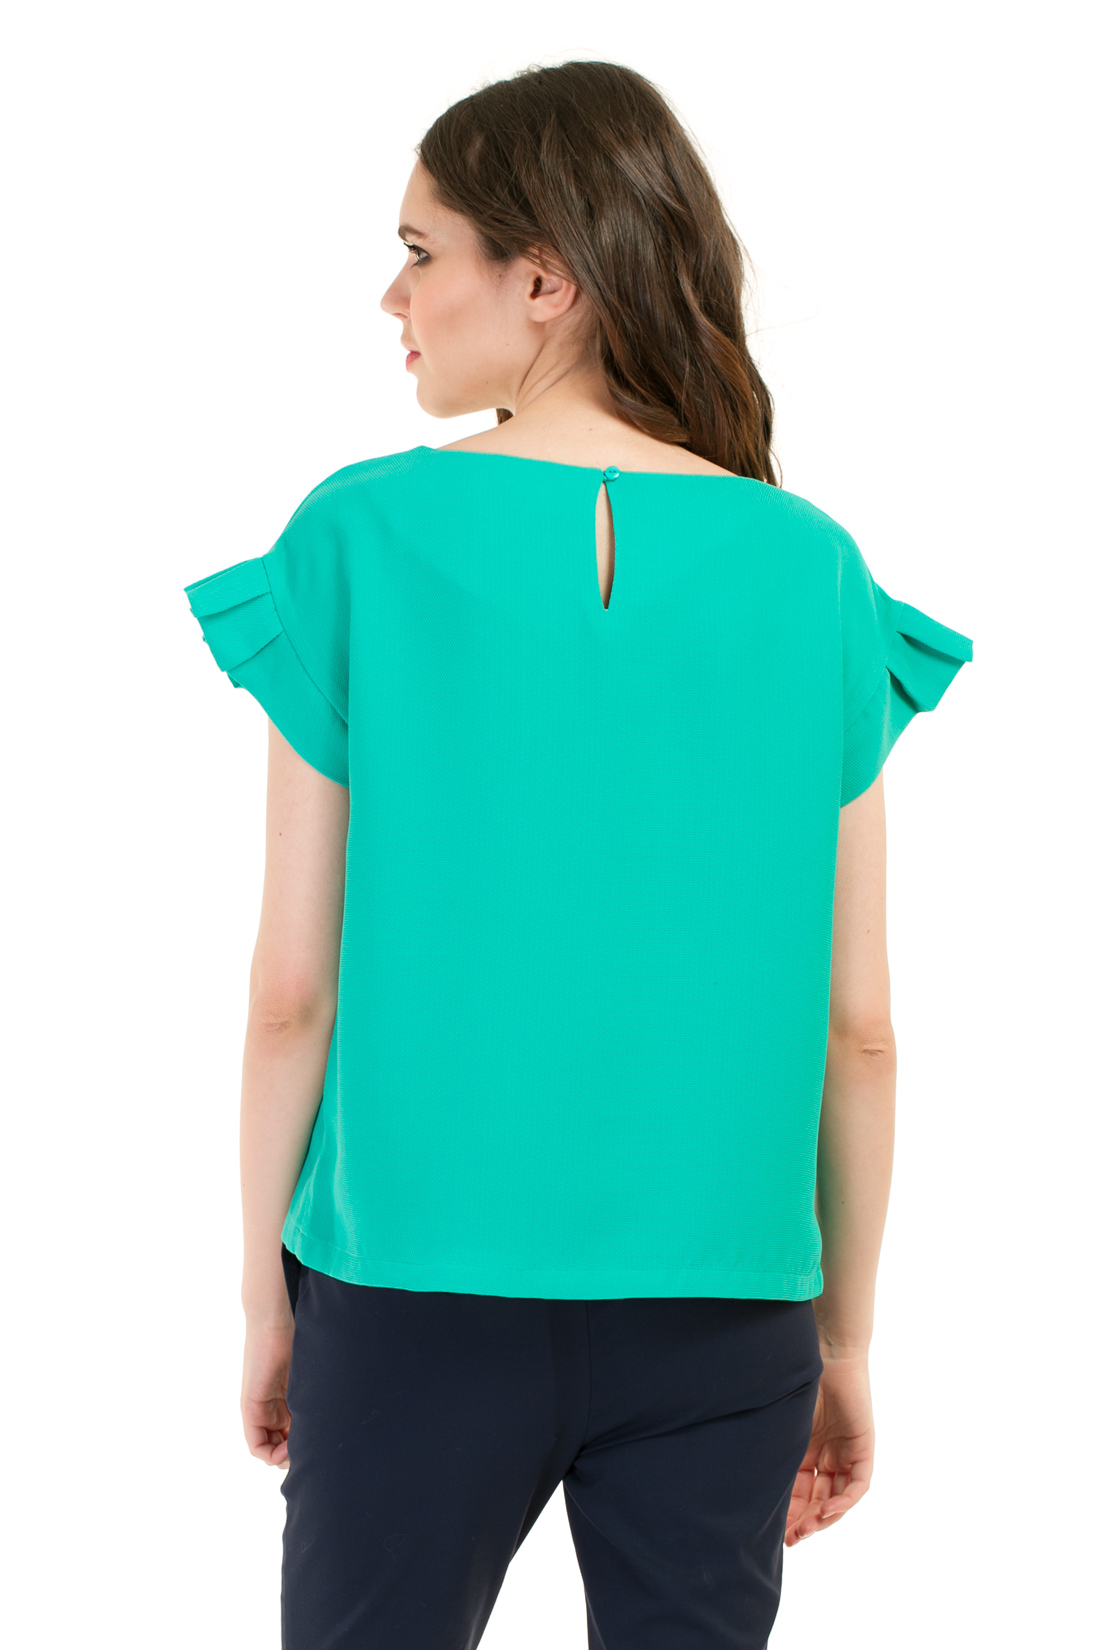 Блузка с рукавами-гофре (арт. baon B197018), размер XXL, цвет зеленый Блузка с рукавами-гофре (арт. baon B197018) - фото 2